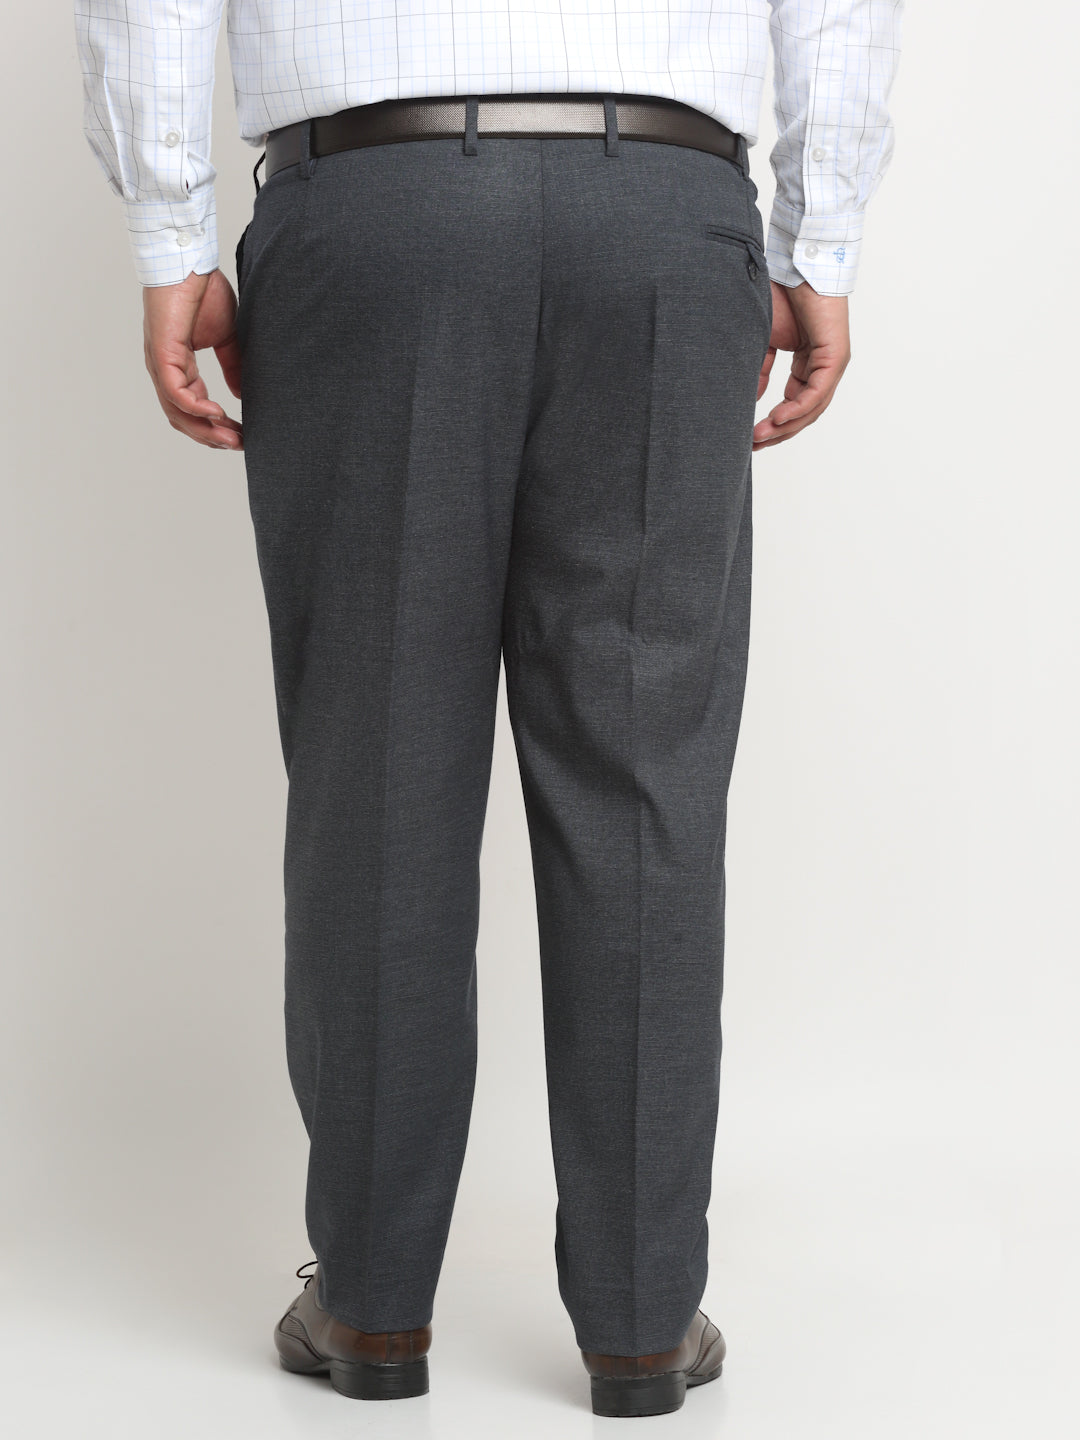 Medium Grey Self Design Full Length Formal Men Slim Fit Trousers - Selling  Fast at Pantaloons.com